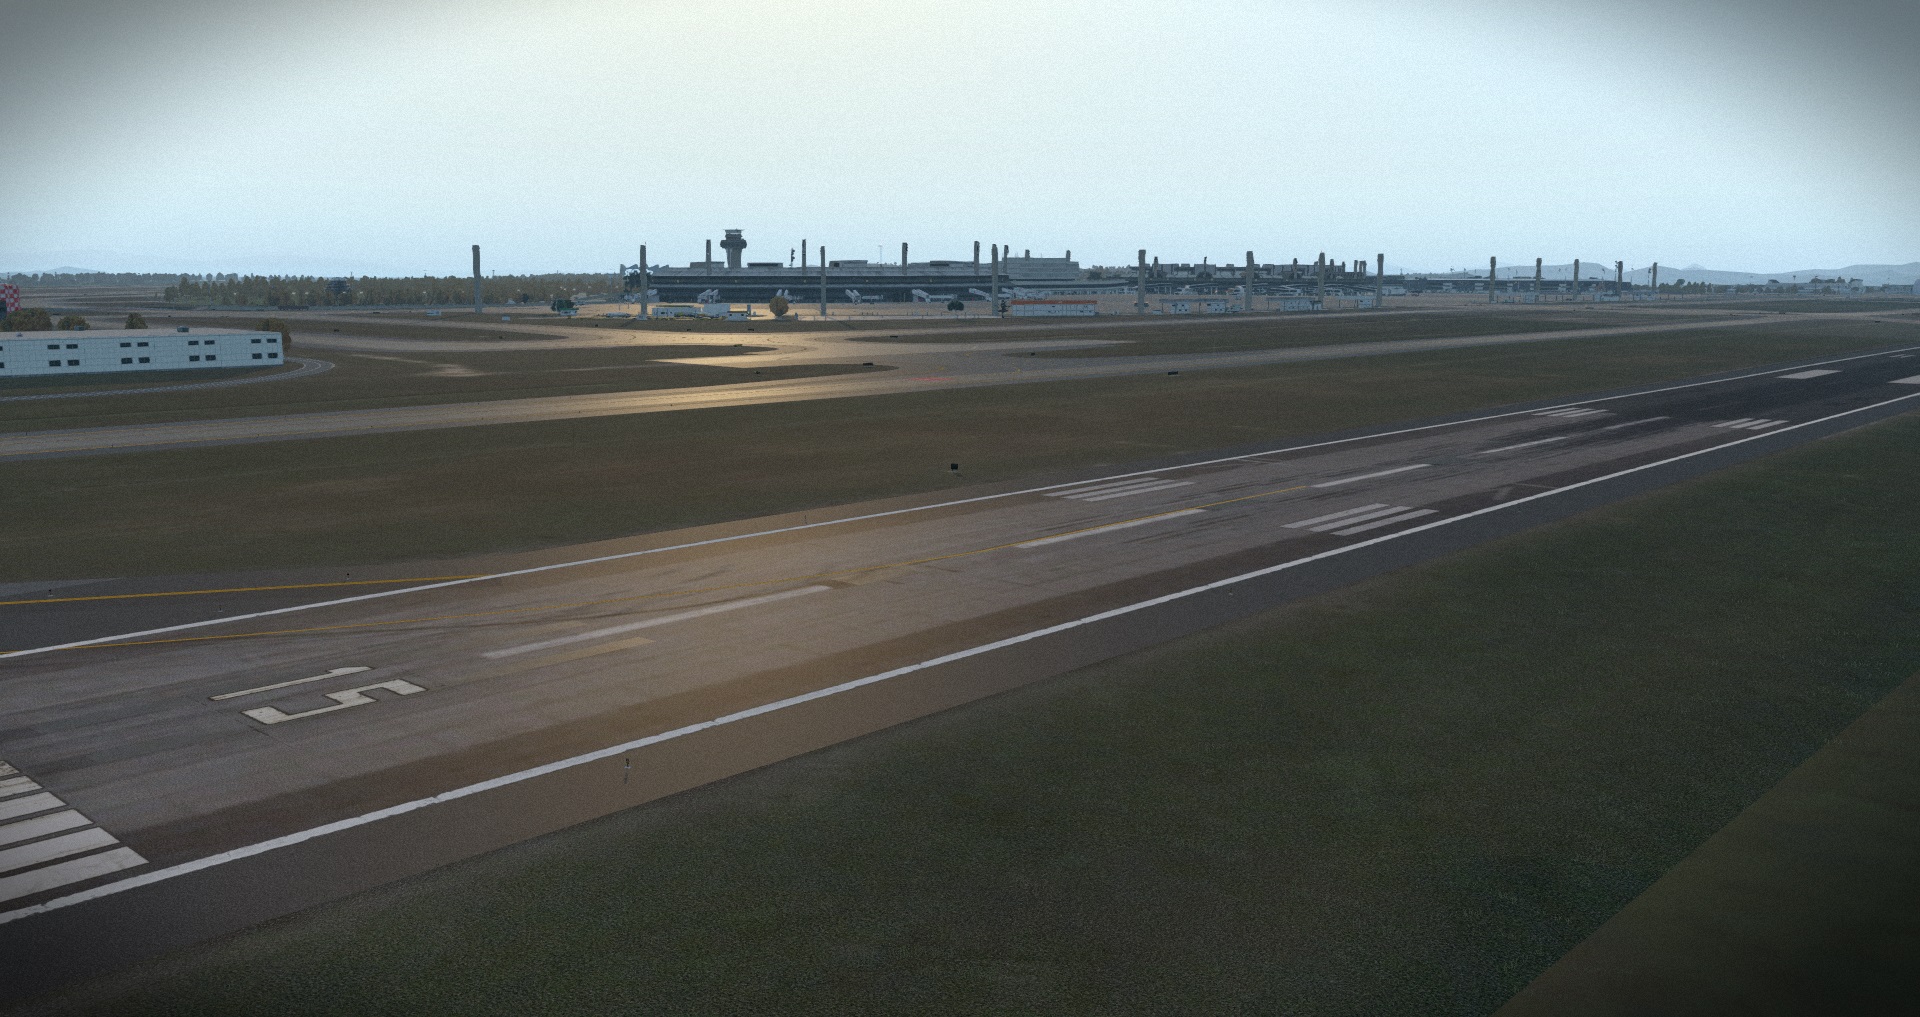 X-Plane 11 - Add-on: Aerosoft - Airport Rio de Janeiro Intl V2.0 screenshot